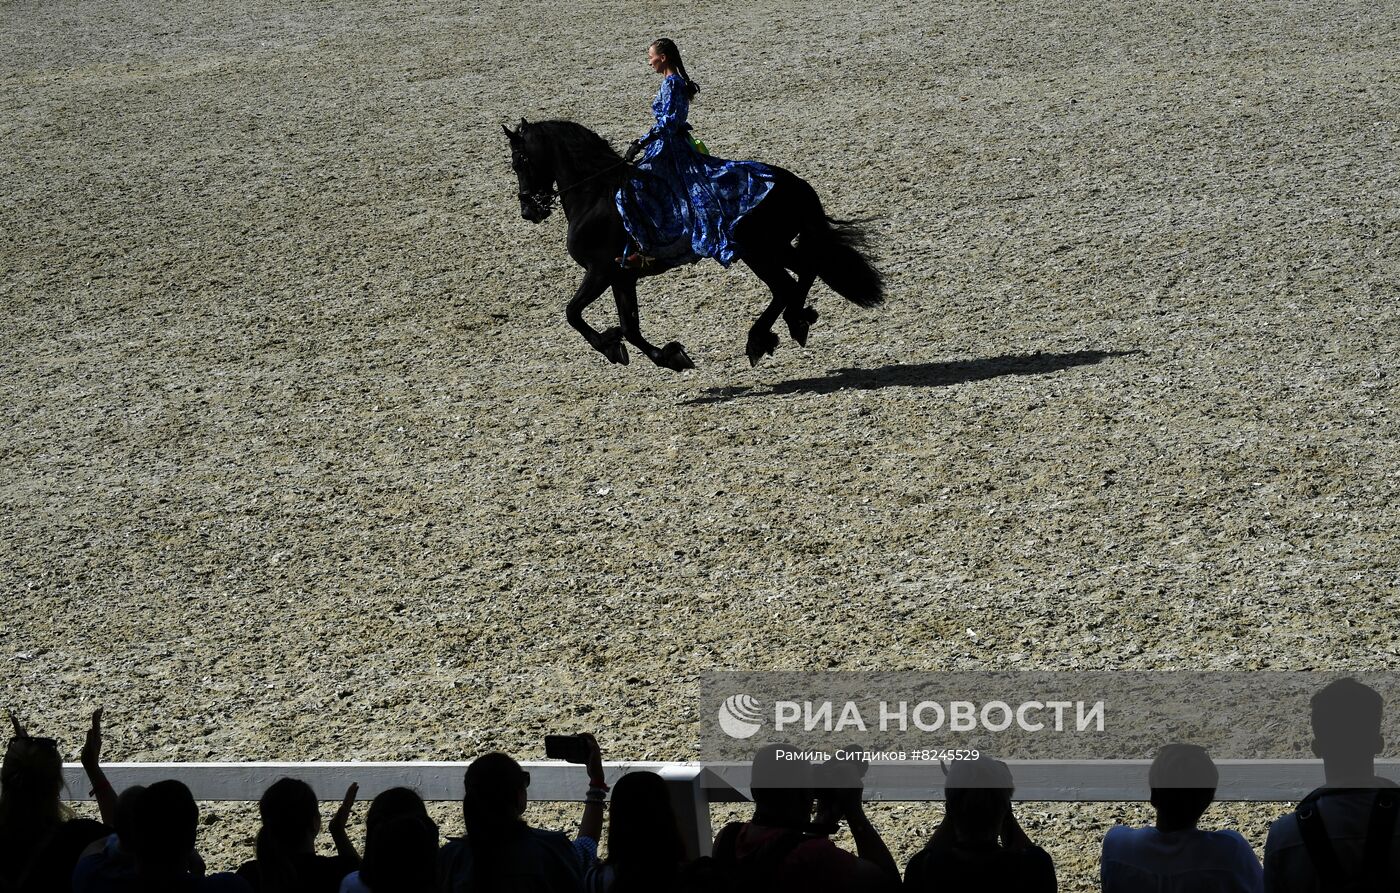 Международный конный фестиваль "Иваново Поле"